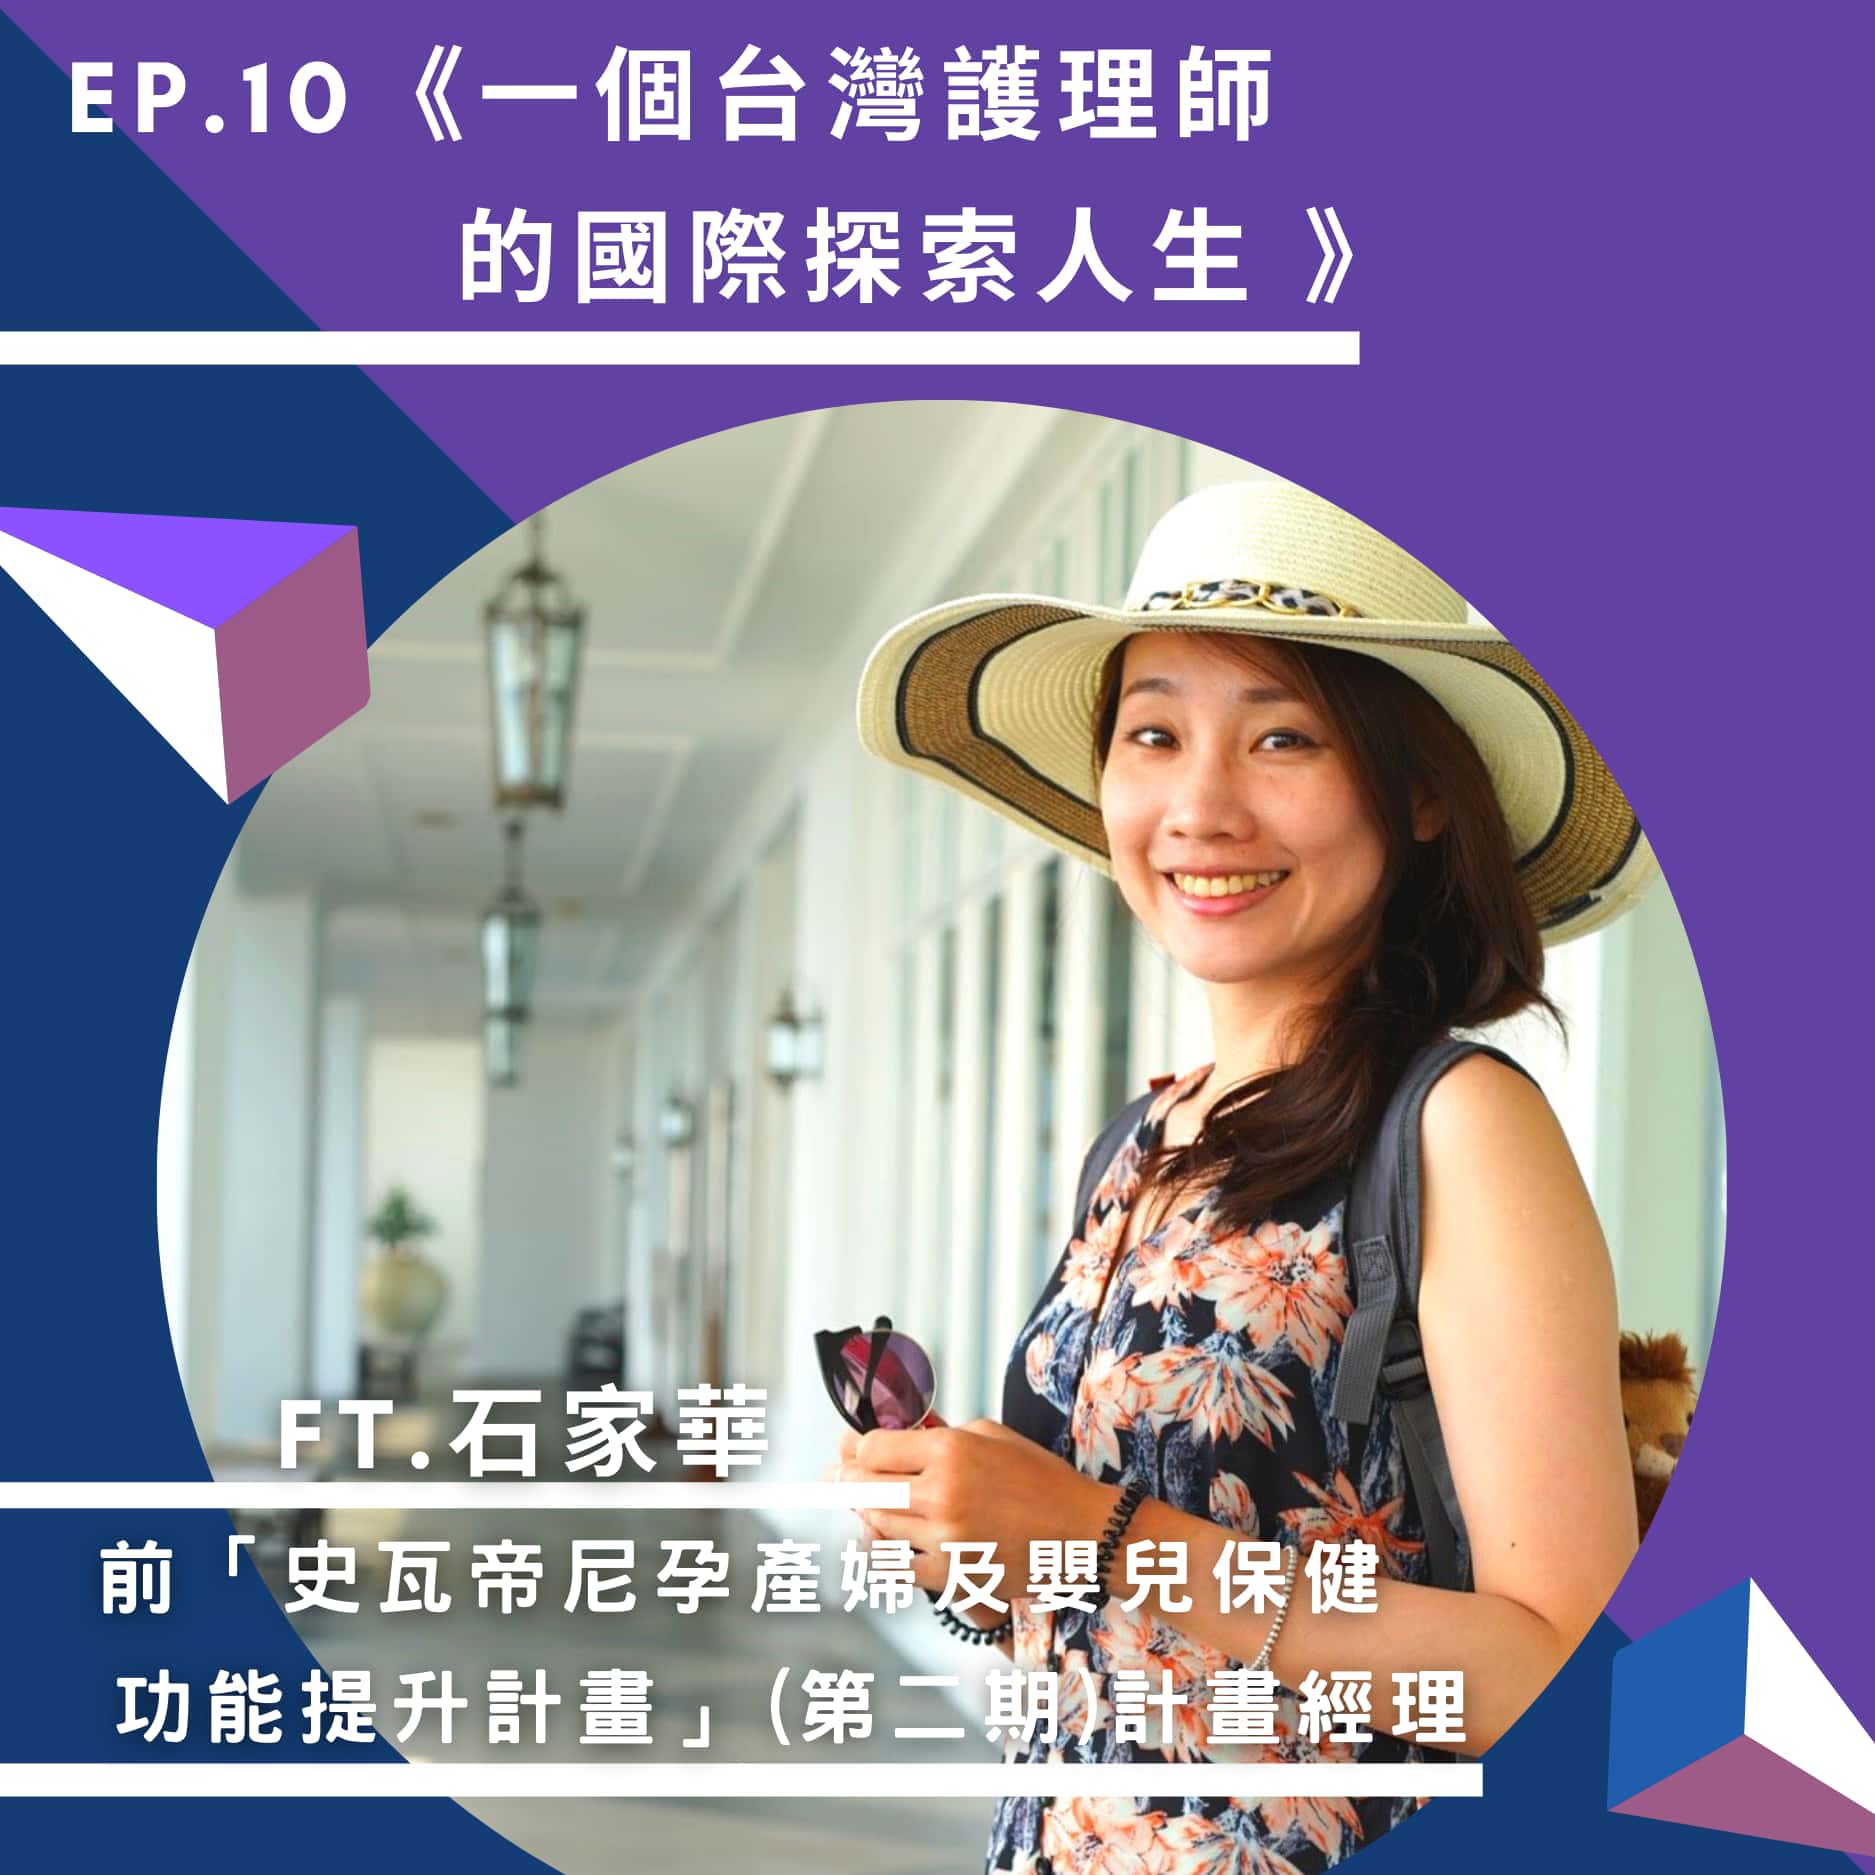 【國合會Podcast節目｜欸(AID)，來自台灣援外的聲音】《Ep.10 一個台灣護理師的國際探索人生 | ft. 前「史瓦帝尼孕產婦及嬰兒保健功能提升計畫」(第二期)石家華計畫經理》